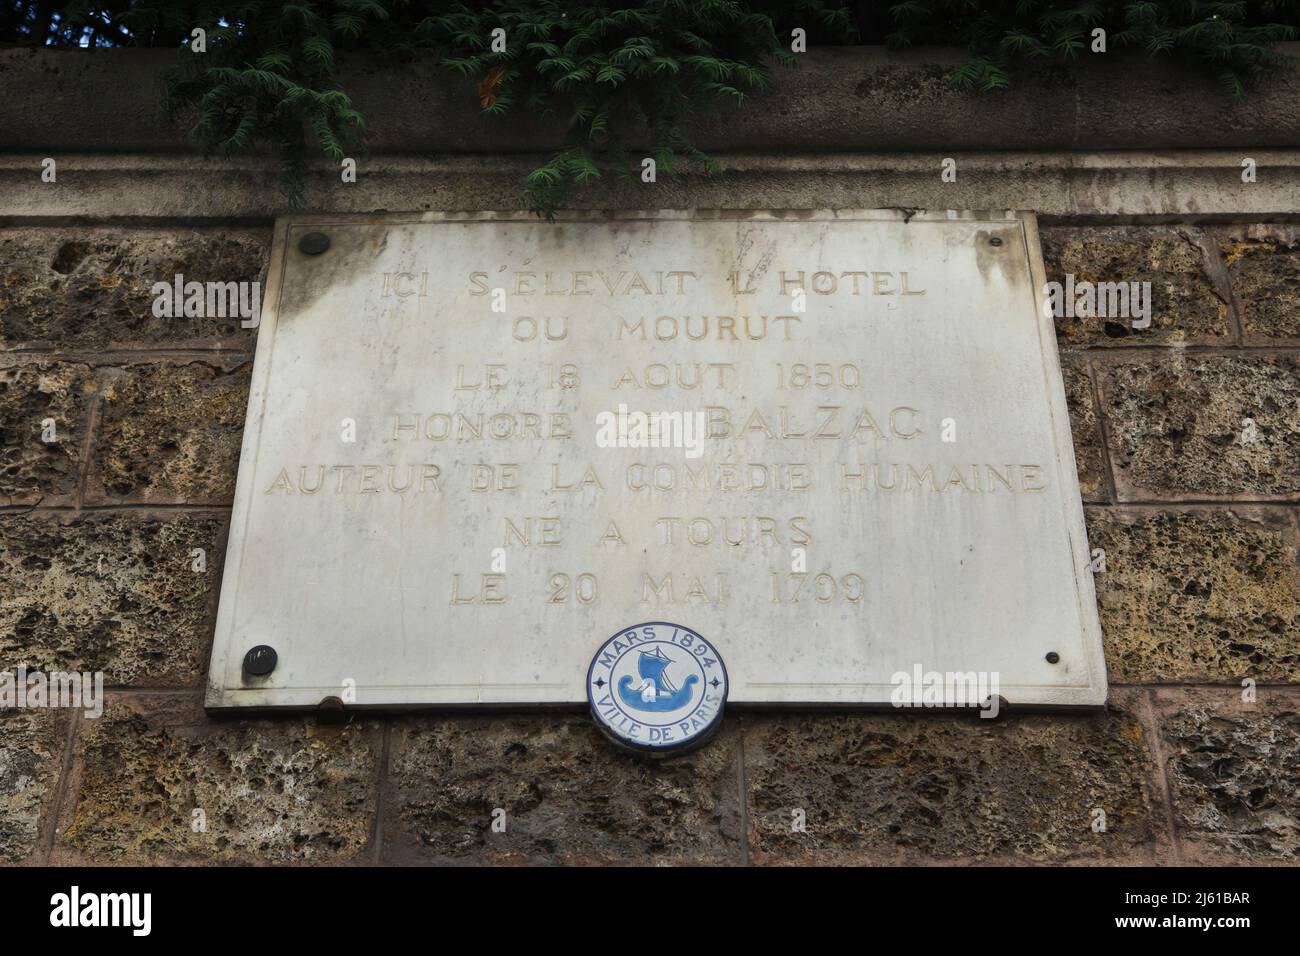 Plaque commémorative dédiée au romancier français Honoré de Balzac sur l'Hôtel Salomon de Rothschild à Paris, France. Honoré de Balzac est mort dans ce lieu le 18 août 1850. Banque D'Images